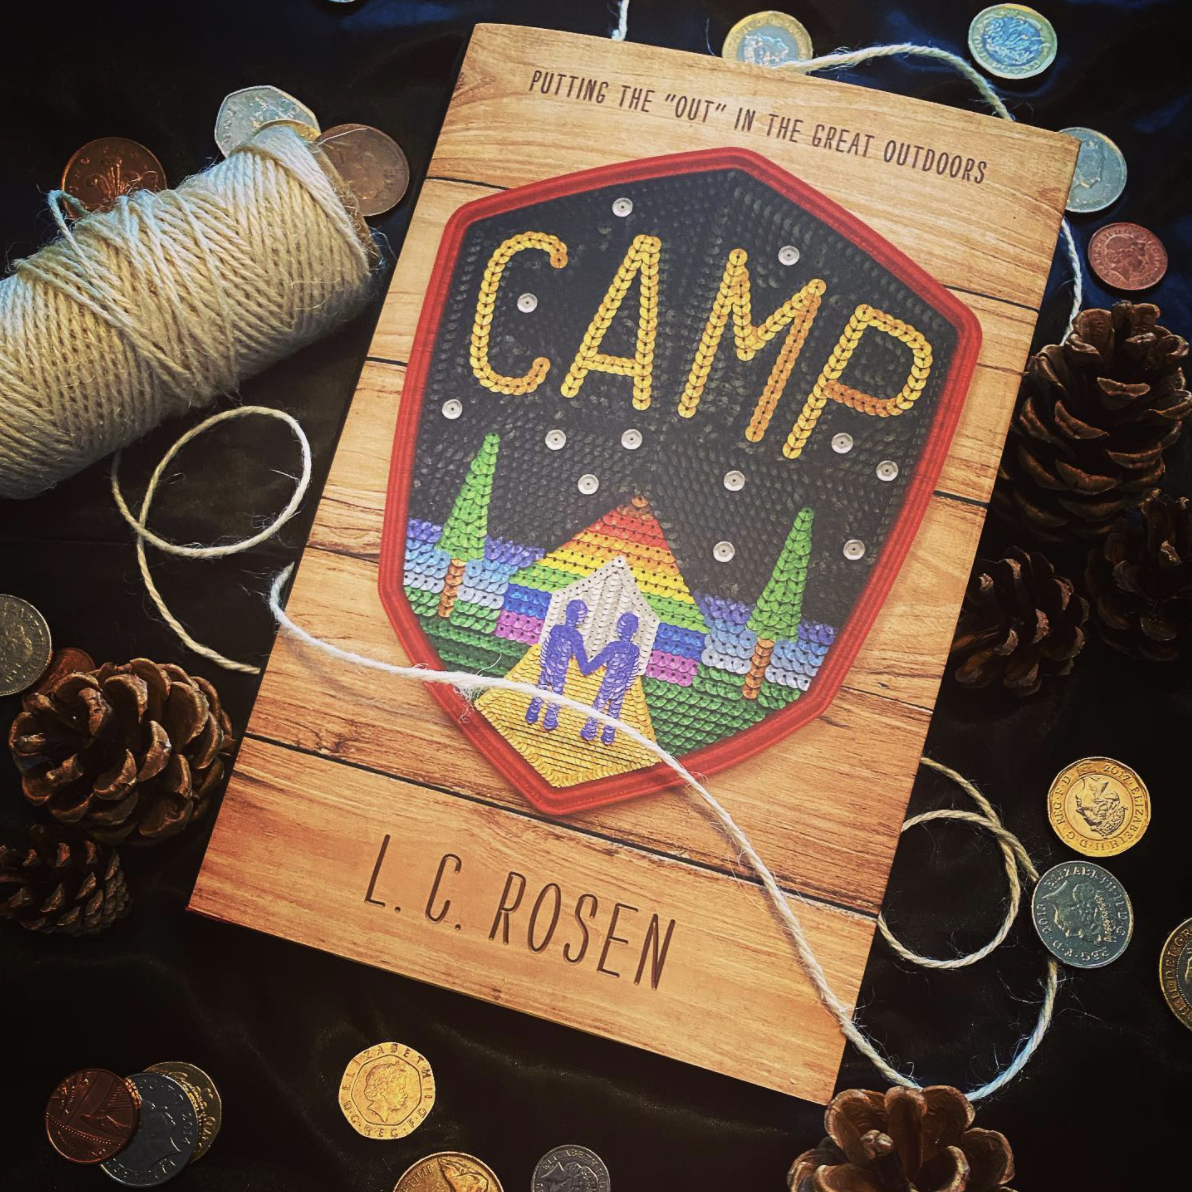 NOVL - Instagram image of Camp